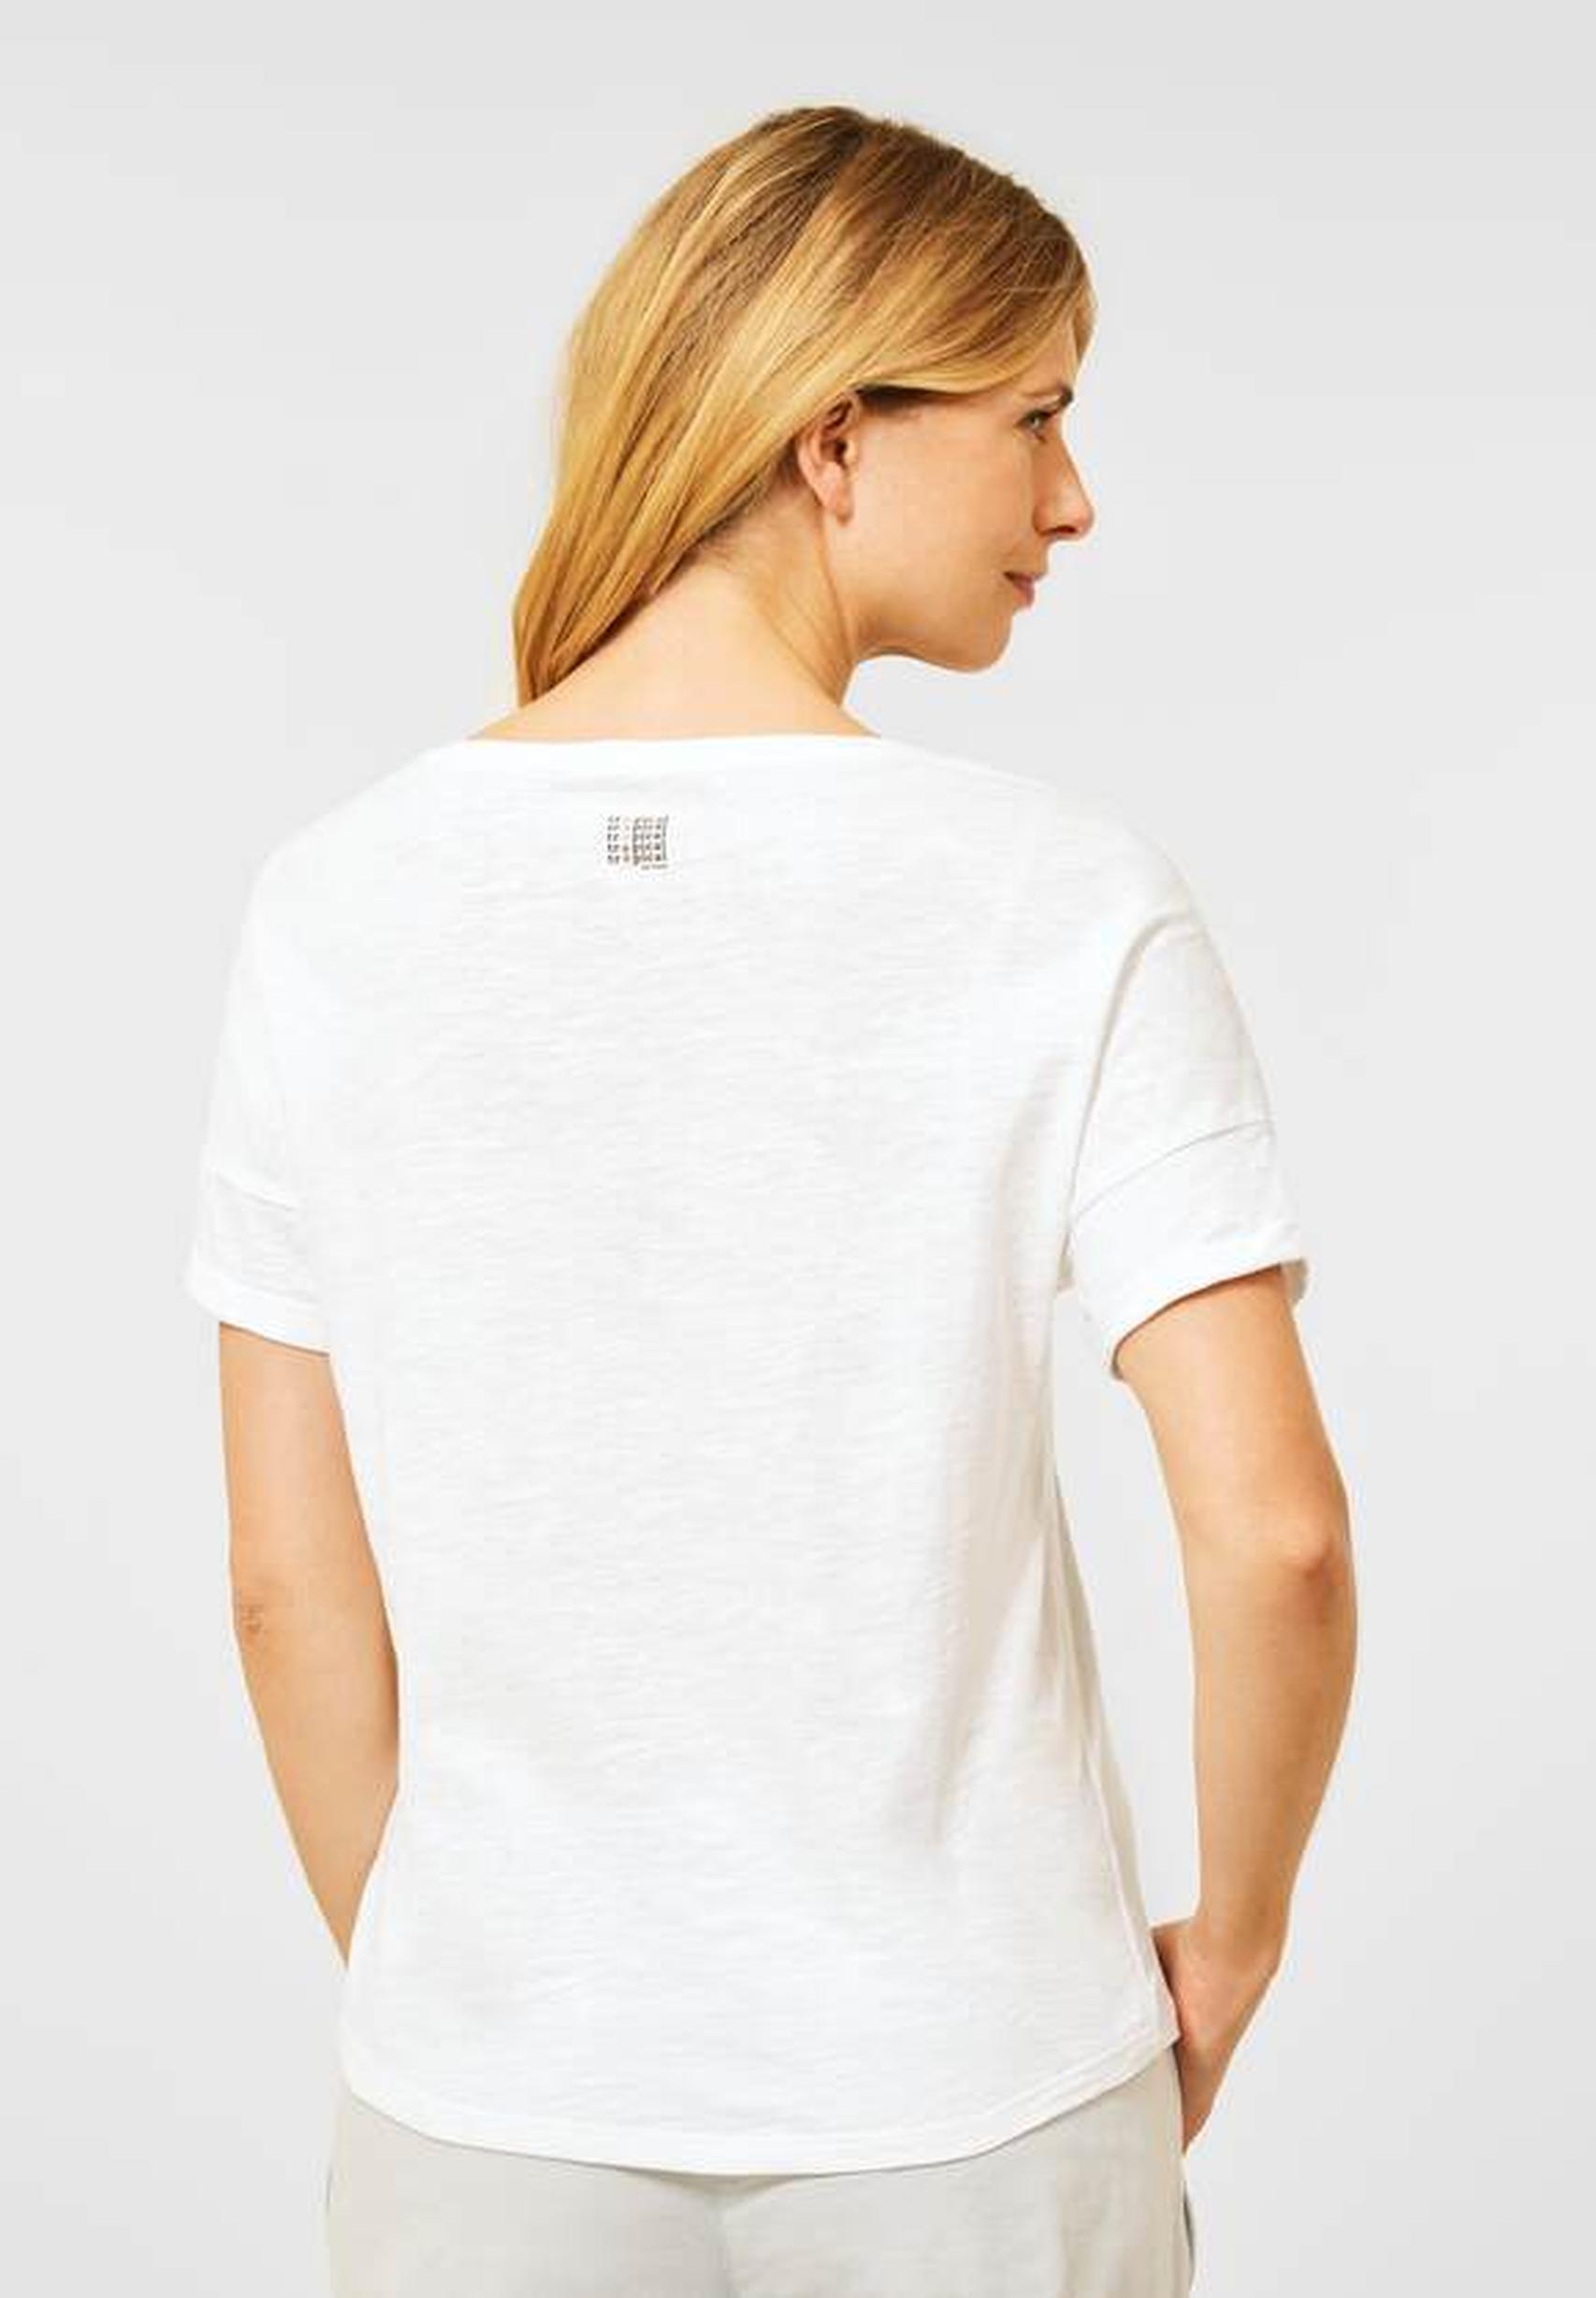 Modisches Shirt aus der Kollektion von CECIL in vanilla white 318168